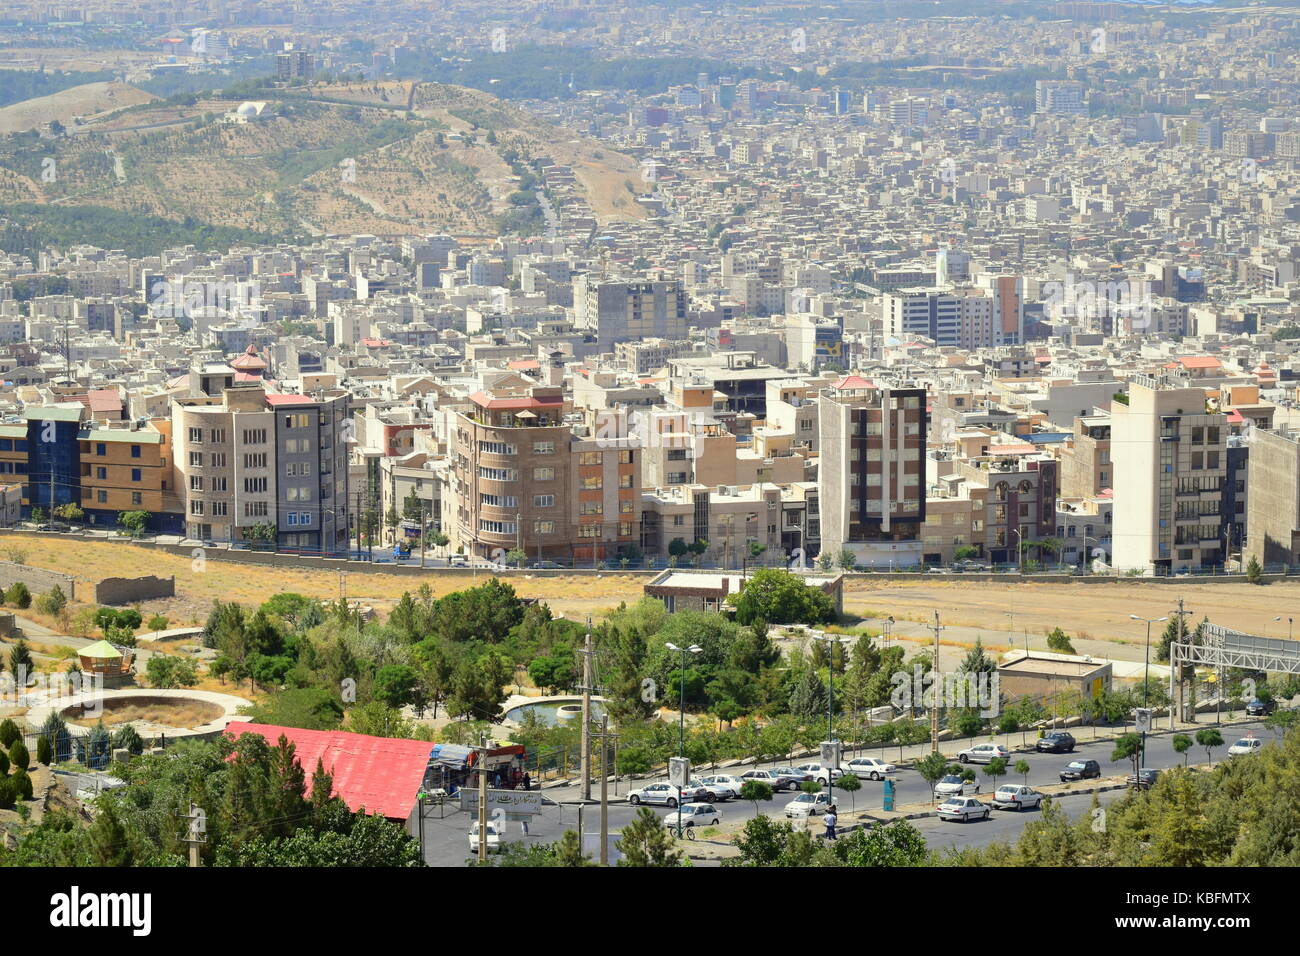 L'Iran nouveau quartier résidentiel de faible hauteur dans la périphérie de la ville, de répondre à la croissance de la demande de l'immobilier et de la croissance de la population Banque D'Images